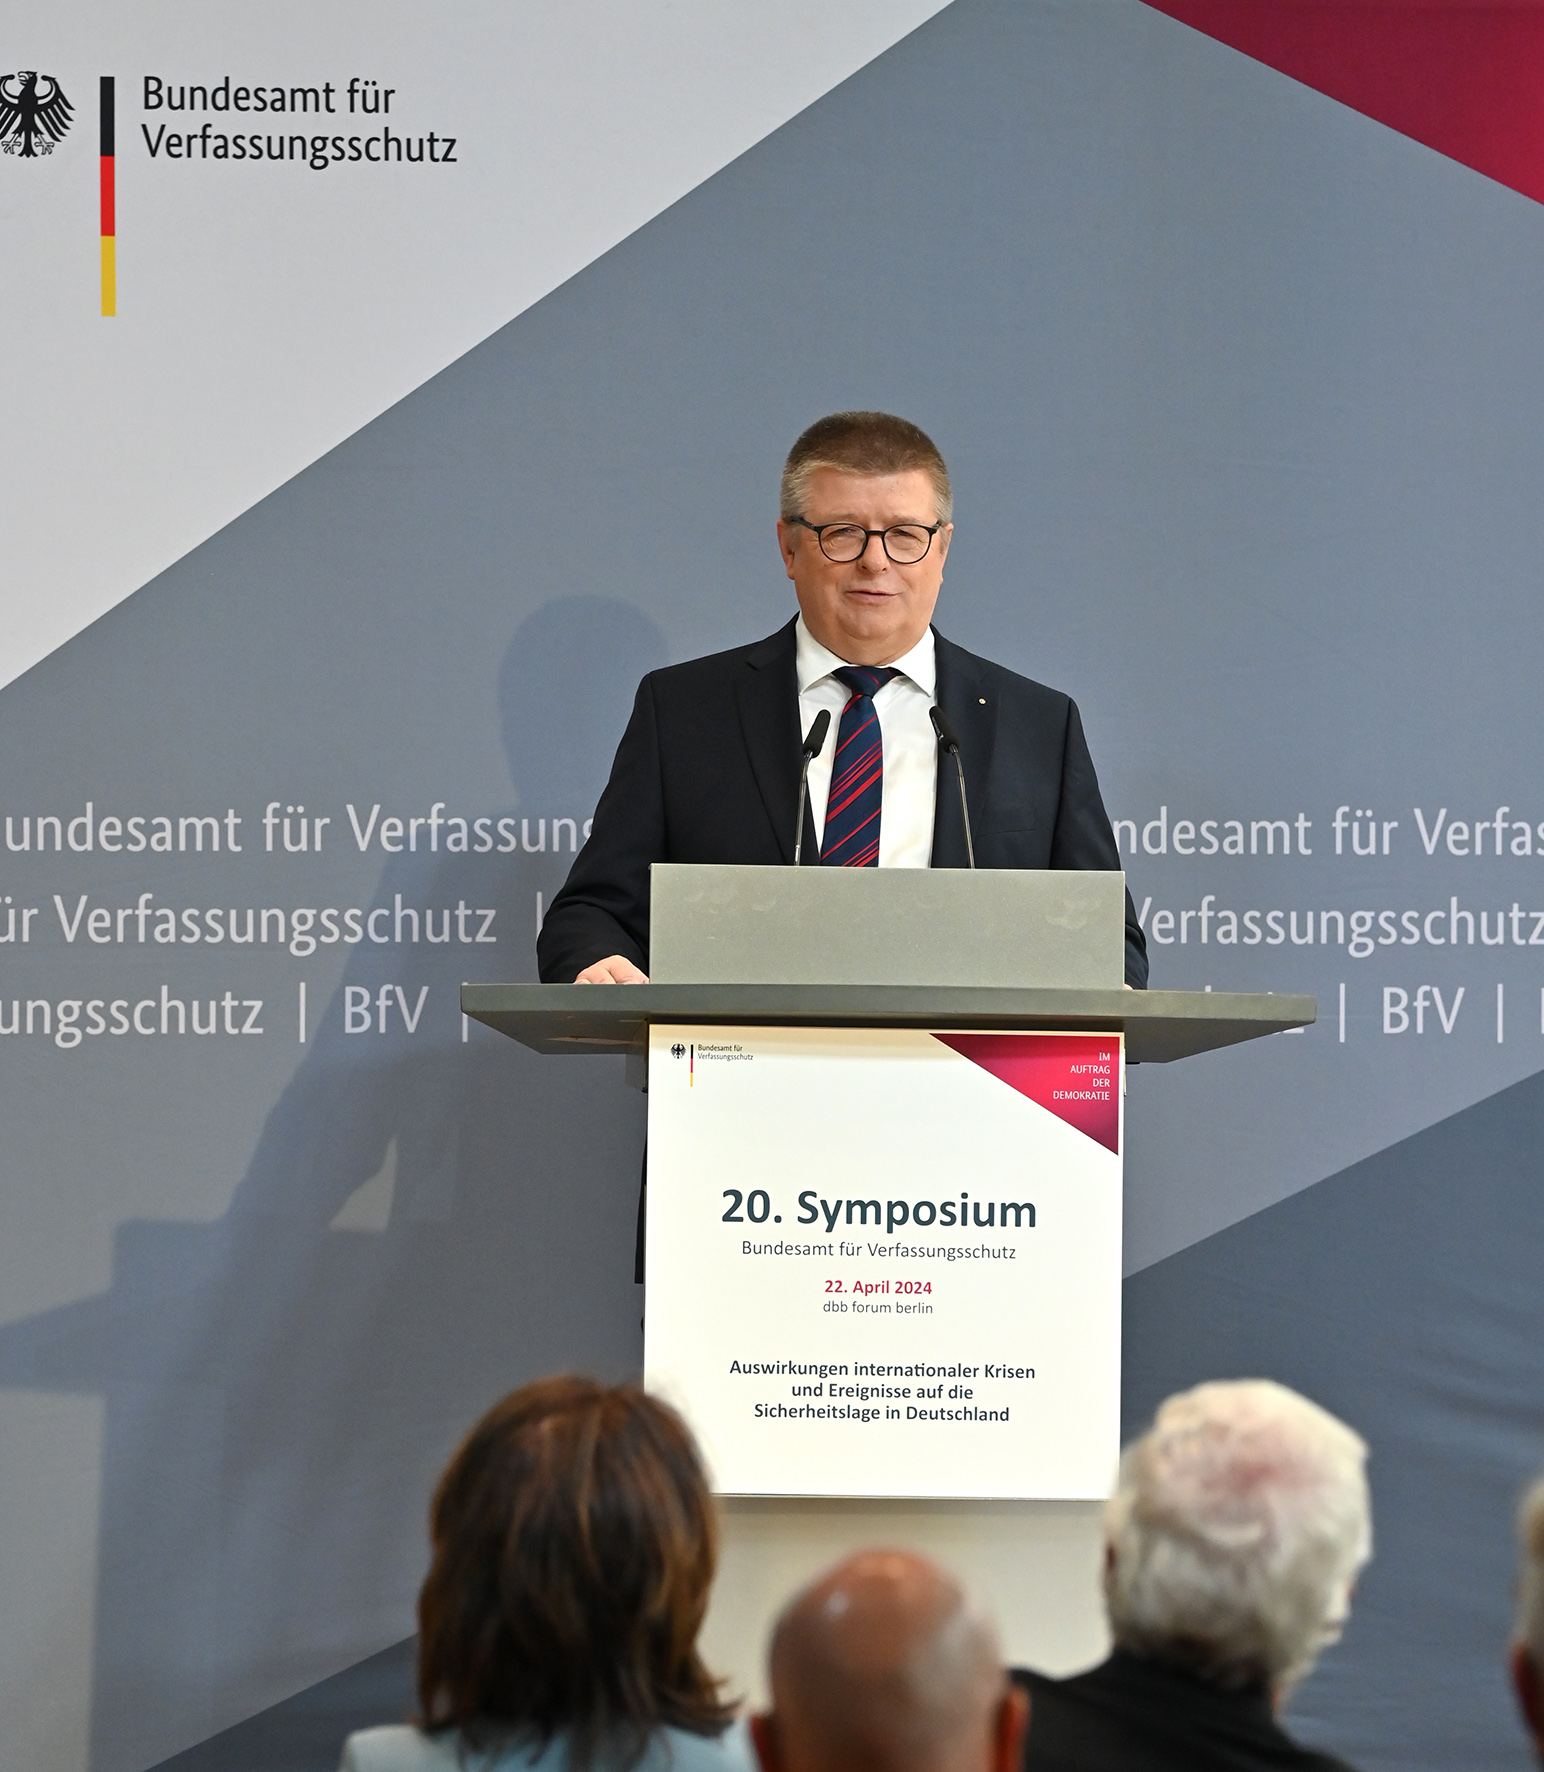 Das Bild zeigt BfV-Präsident Thomas Haldenwang während seiner Rede am Podium des Symposiums.